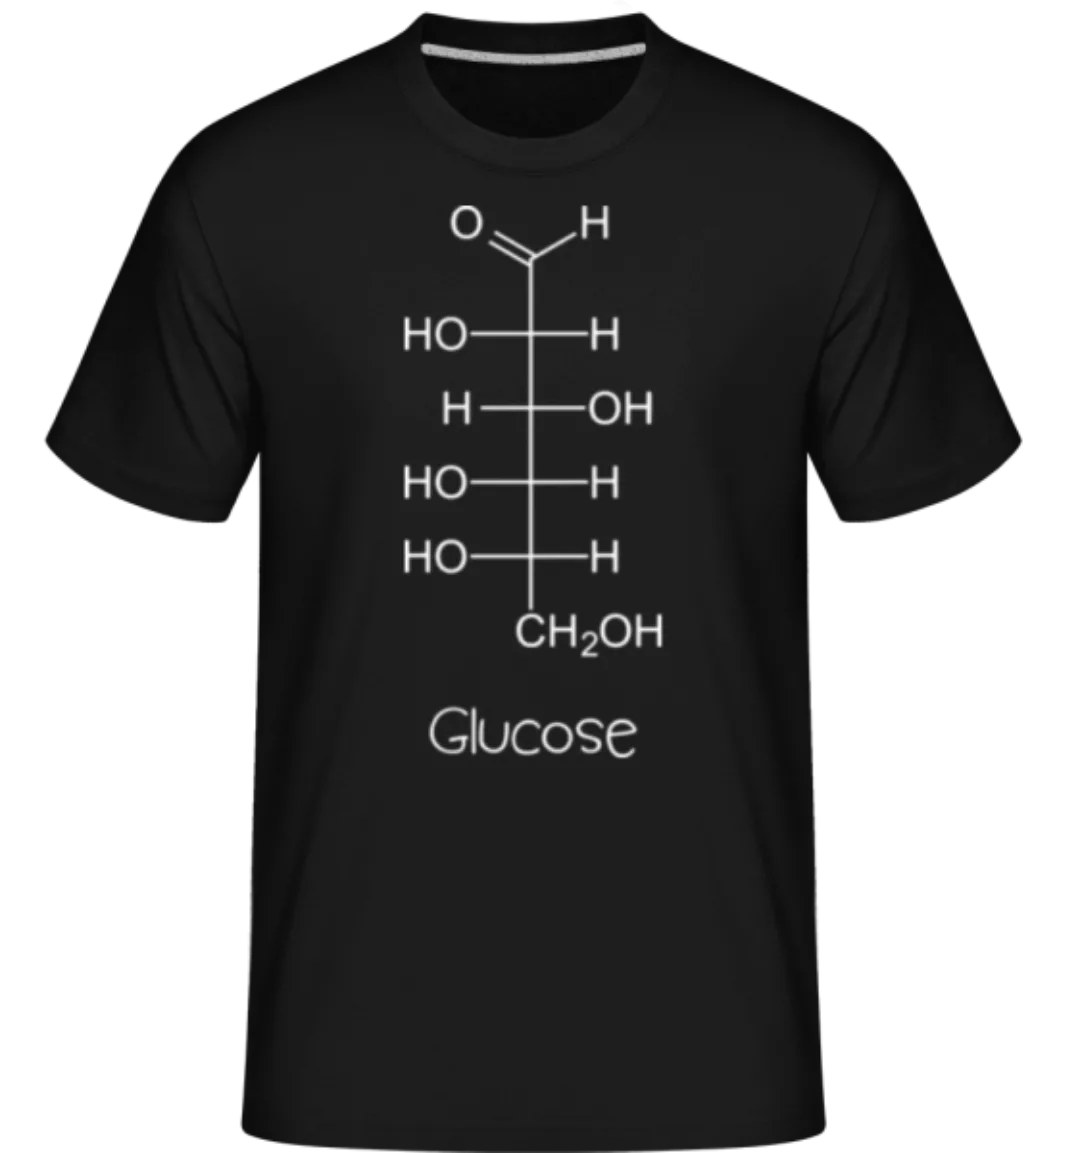 Glucose Chemische Formel · Shirtinator Männer T-Shirt günstig online kaufen